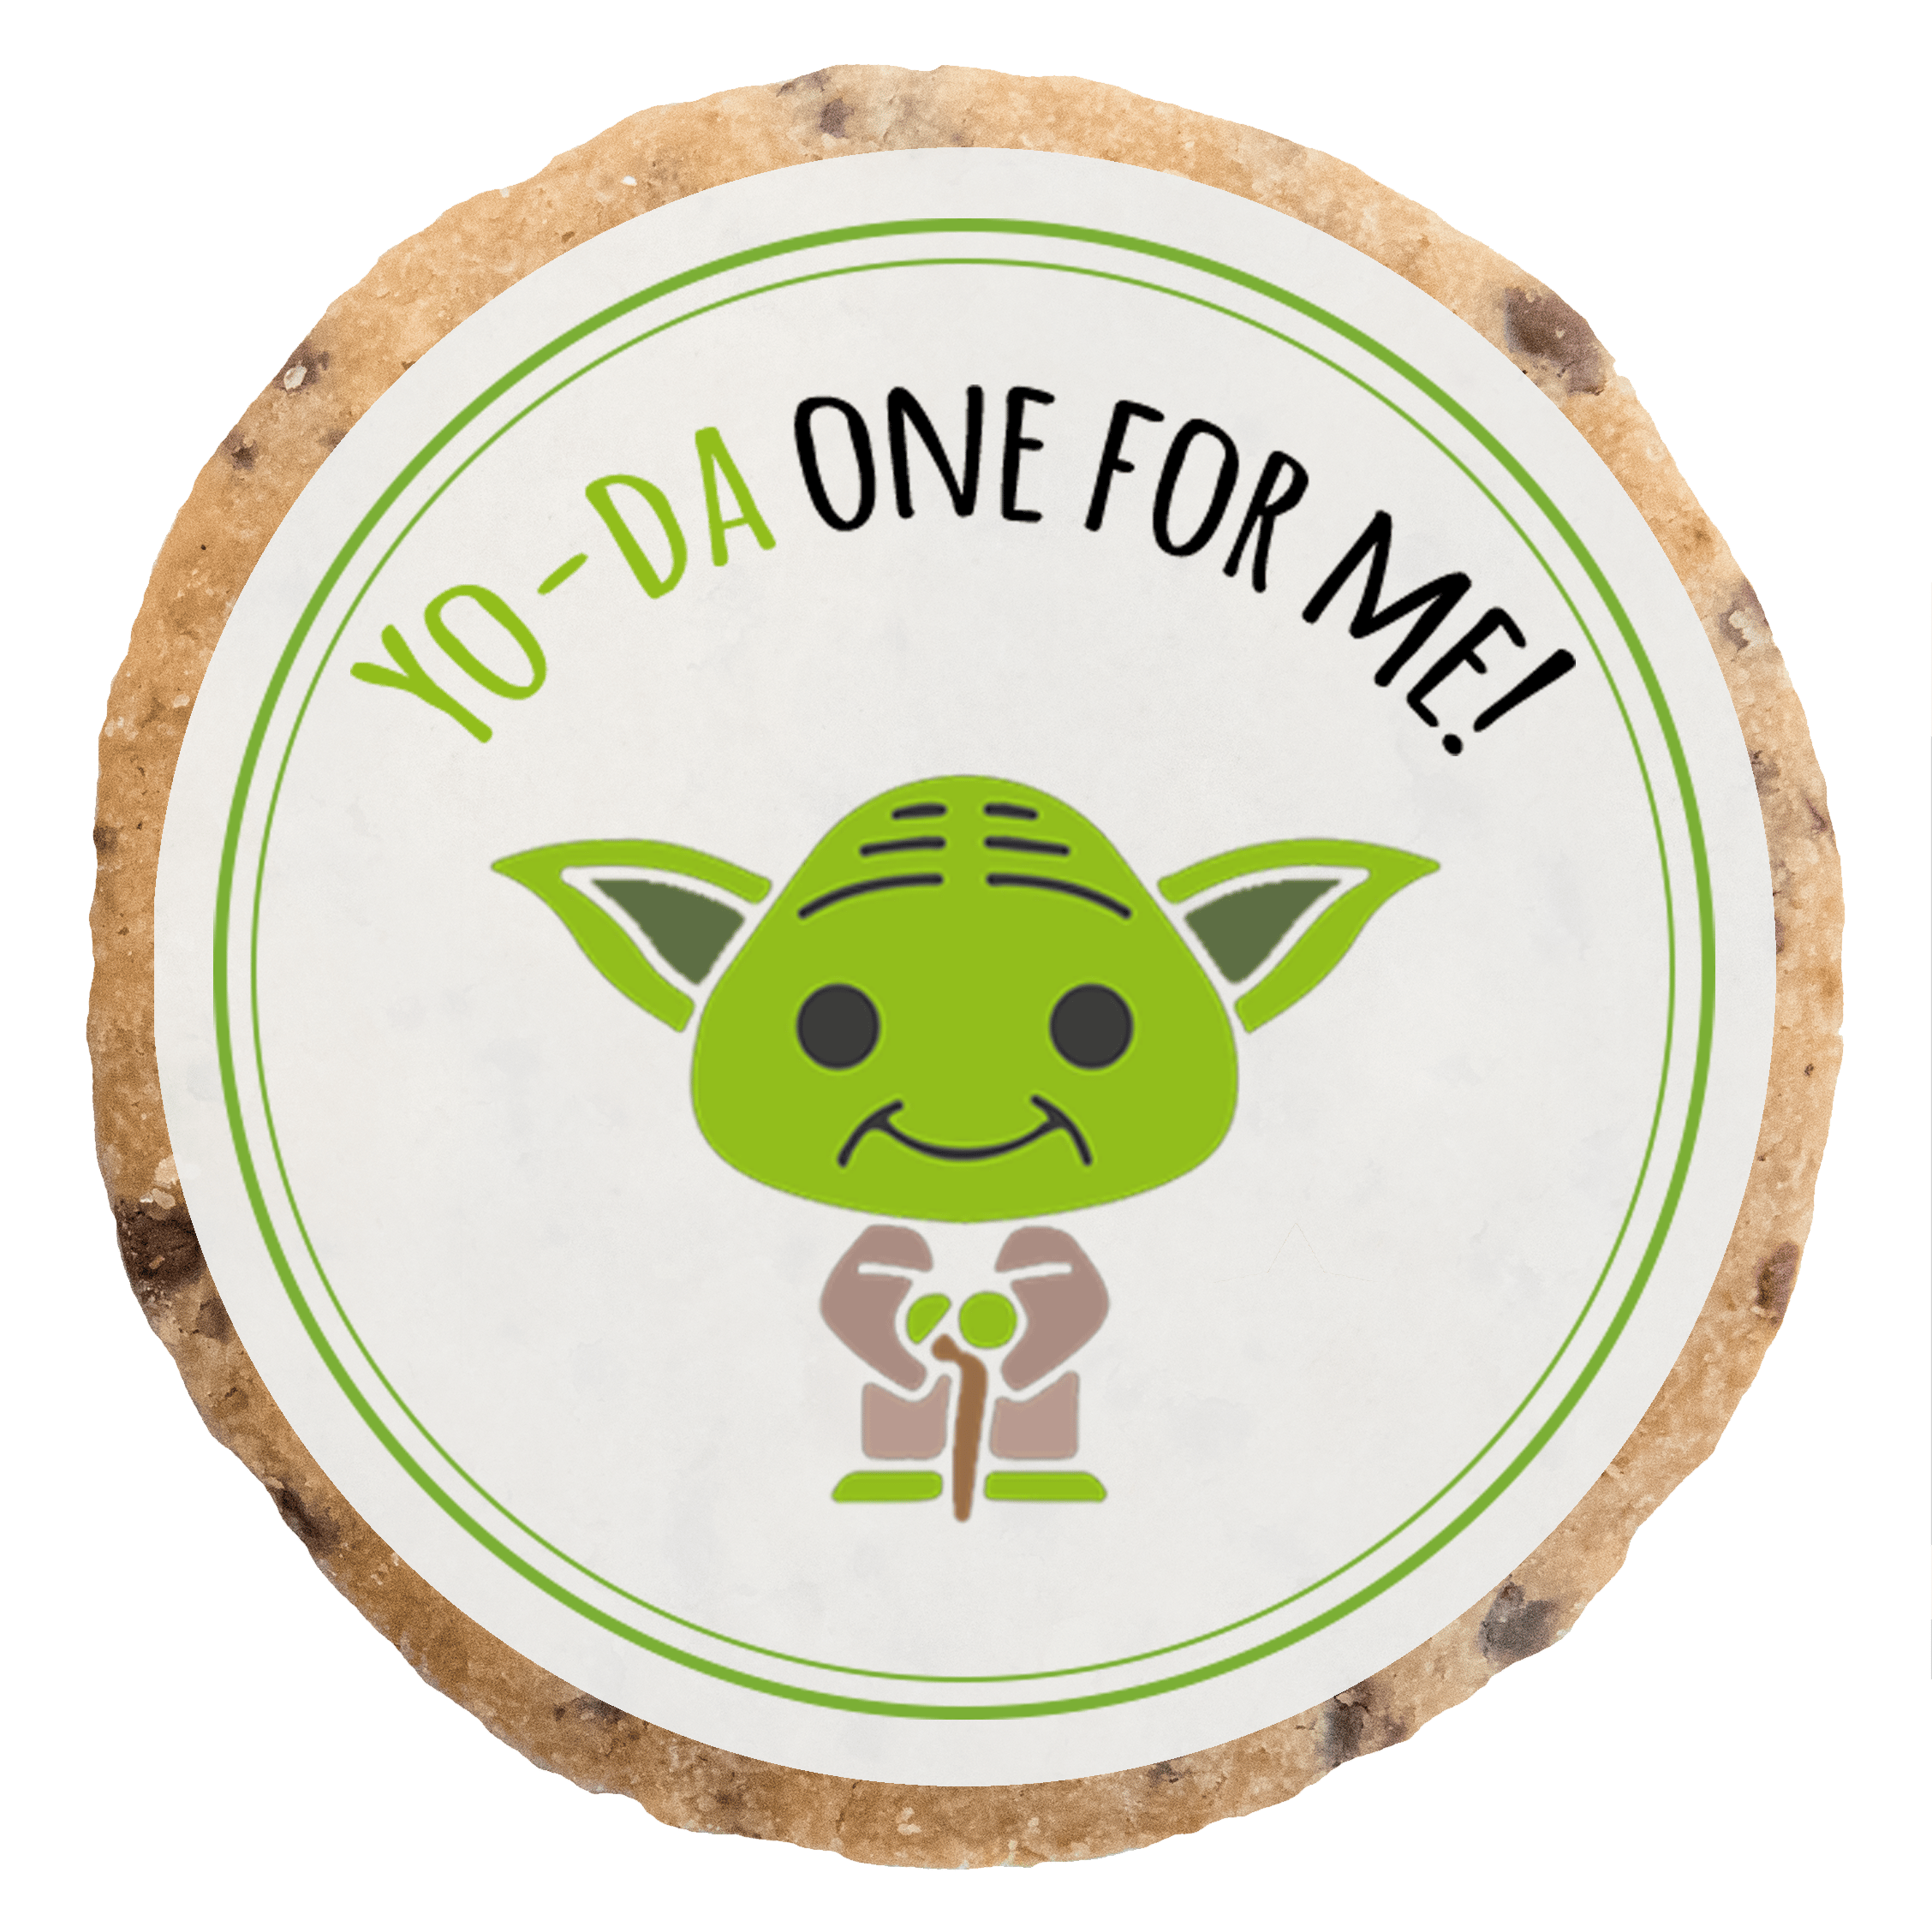 "Yoda one for me" MotivKEKS